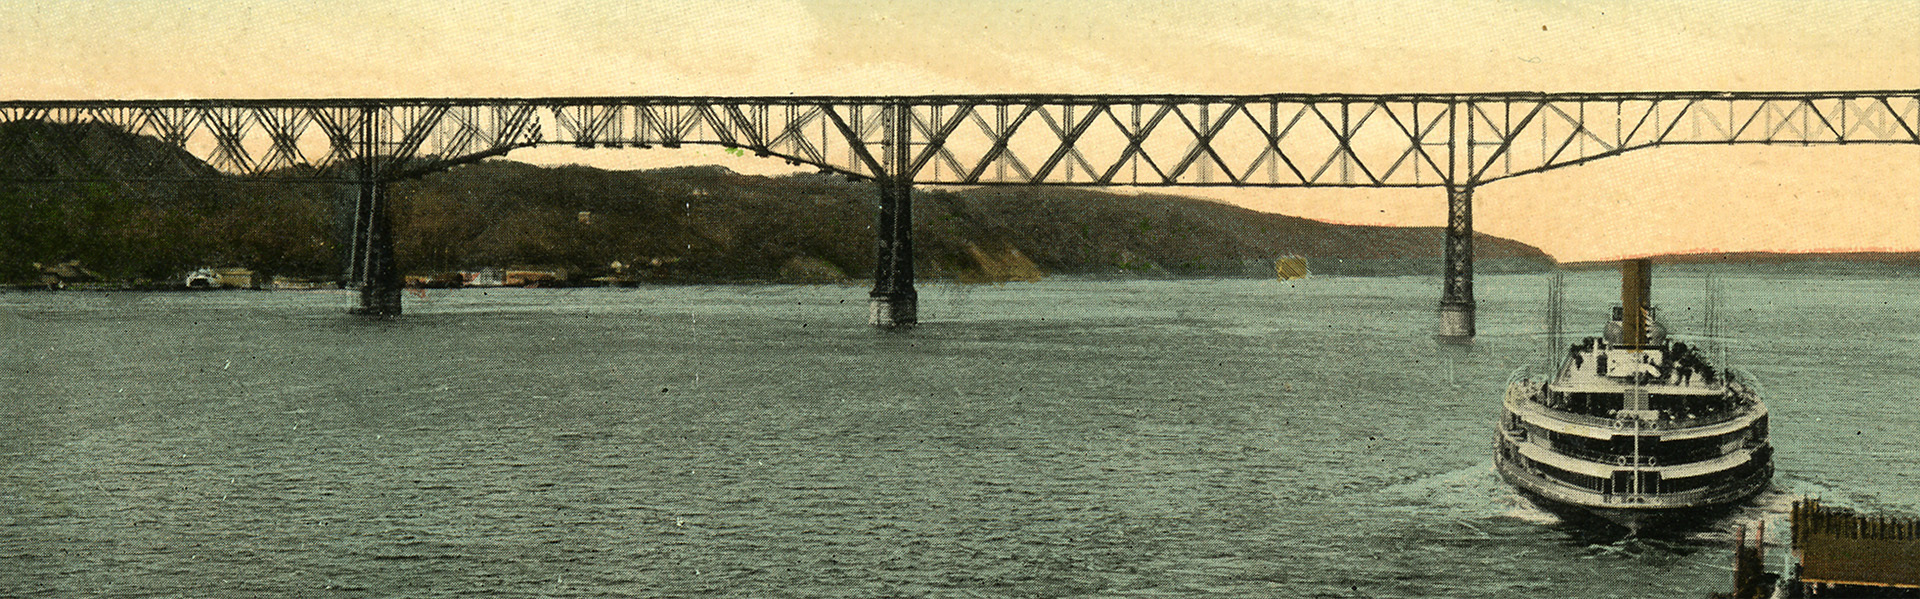 Poughkeepsie Railroad Bridge, 1900s